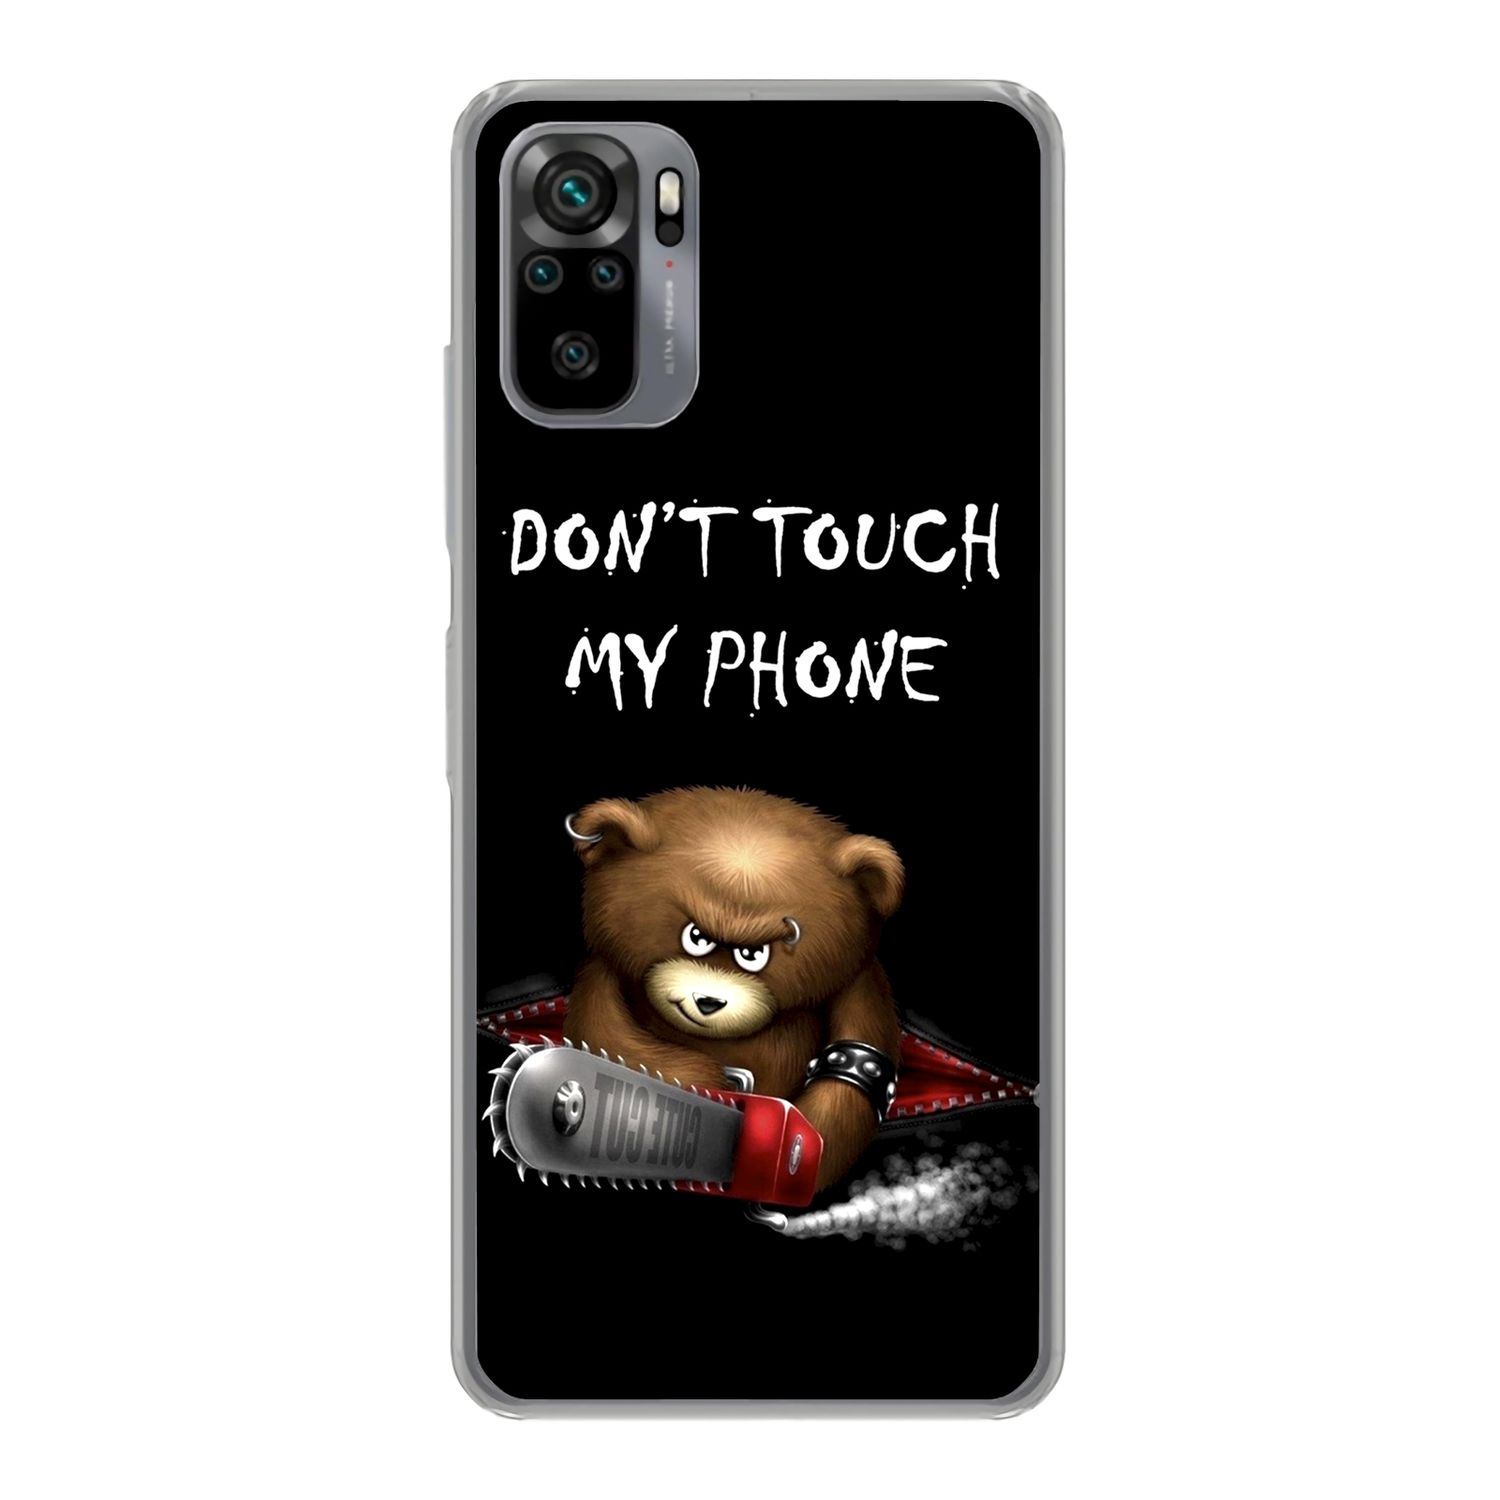 Bär Phone 10S, Redmi DESIGN KÖNIG Backcover, Case, Schwarz Xiaomi, Touch Dont My Note